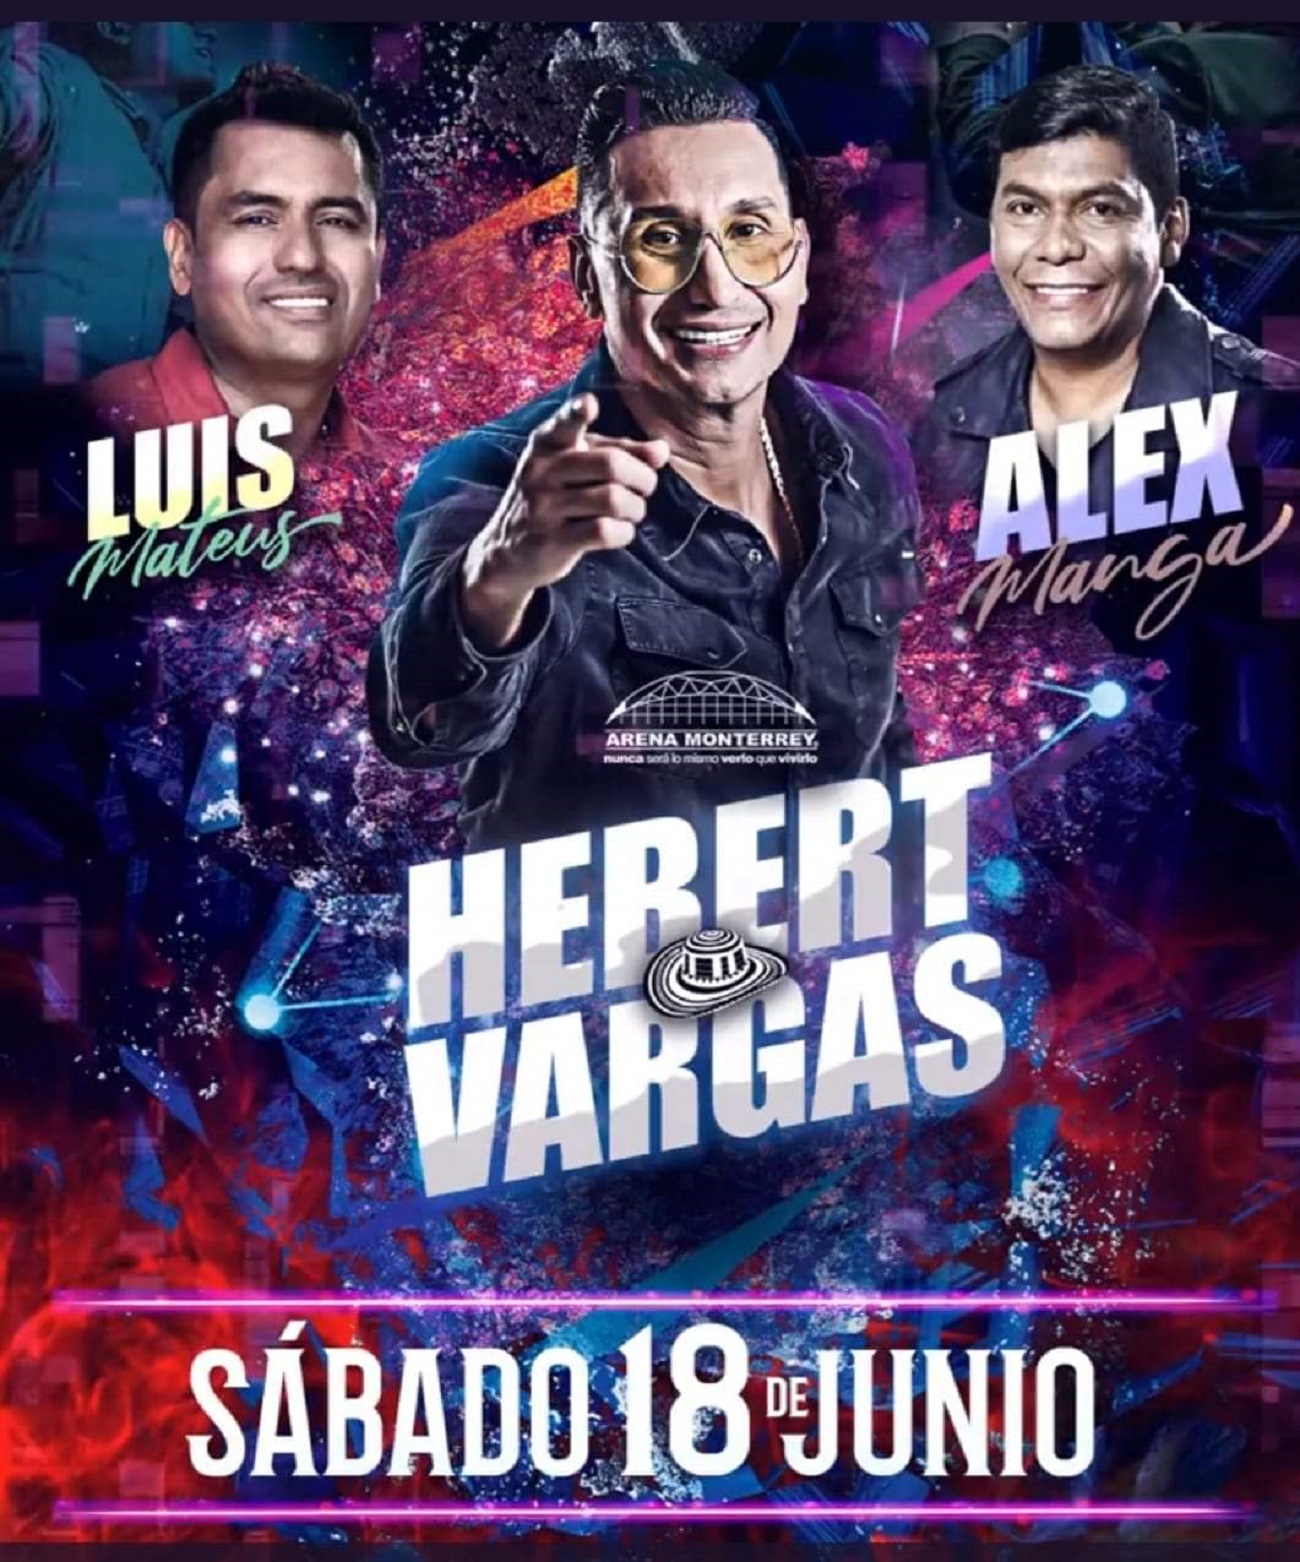 Hebert Vargas, Alex Manga y Luis Mateus, en gran concierto musical en Monterrey- México